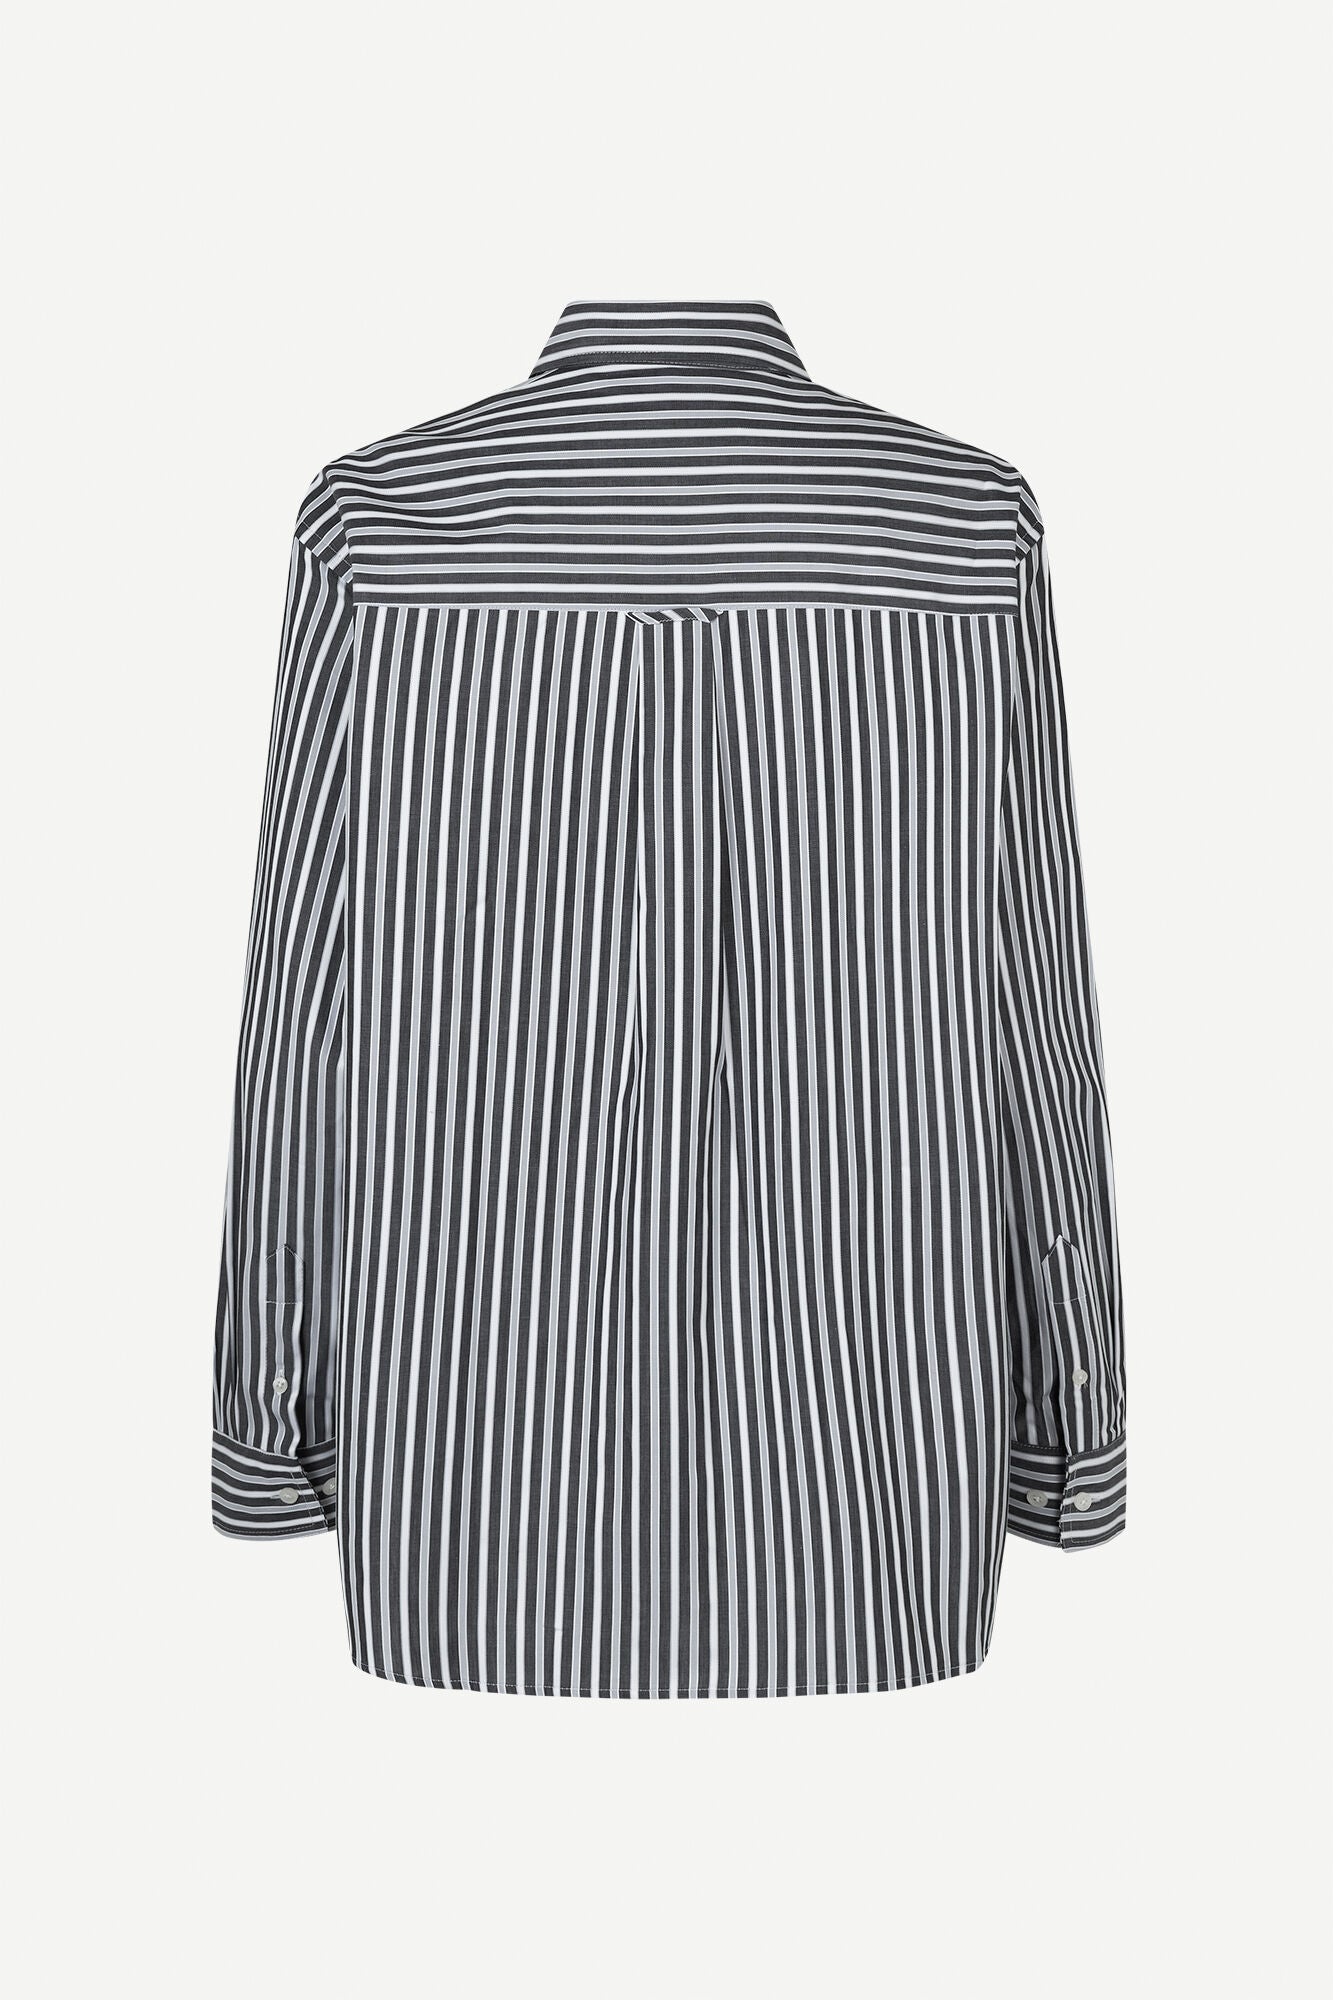 Lova shirt in black stripes